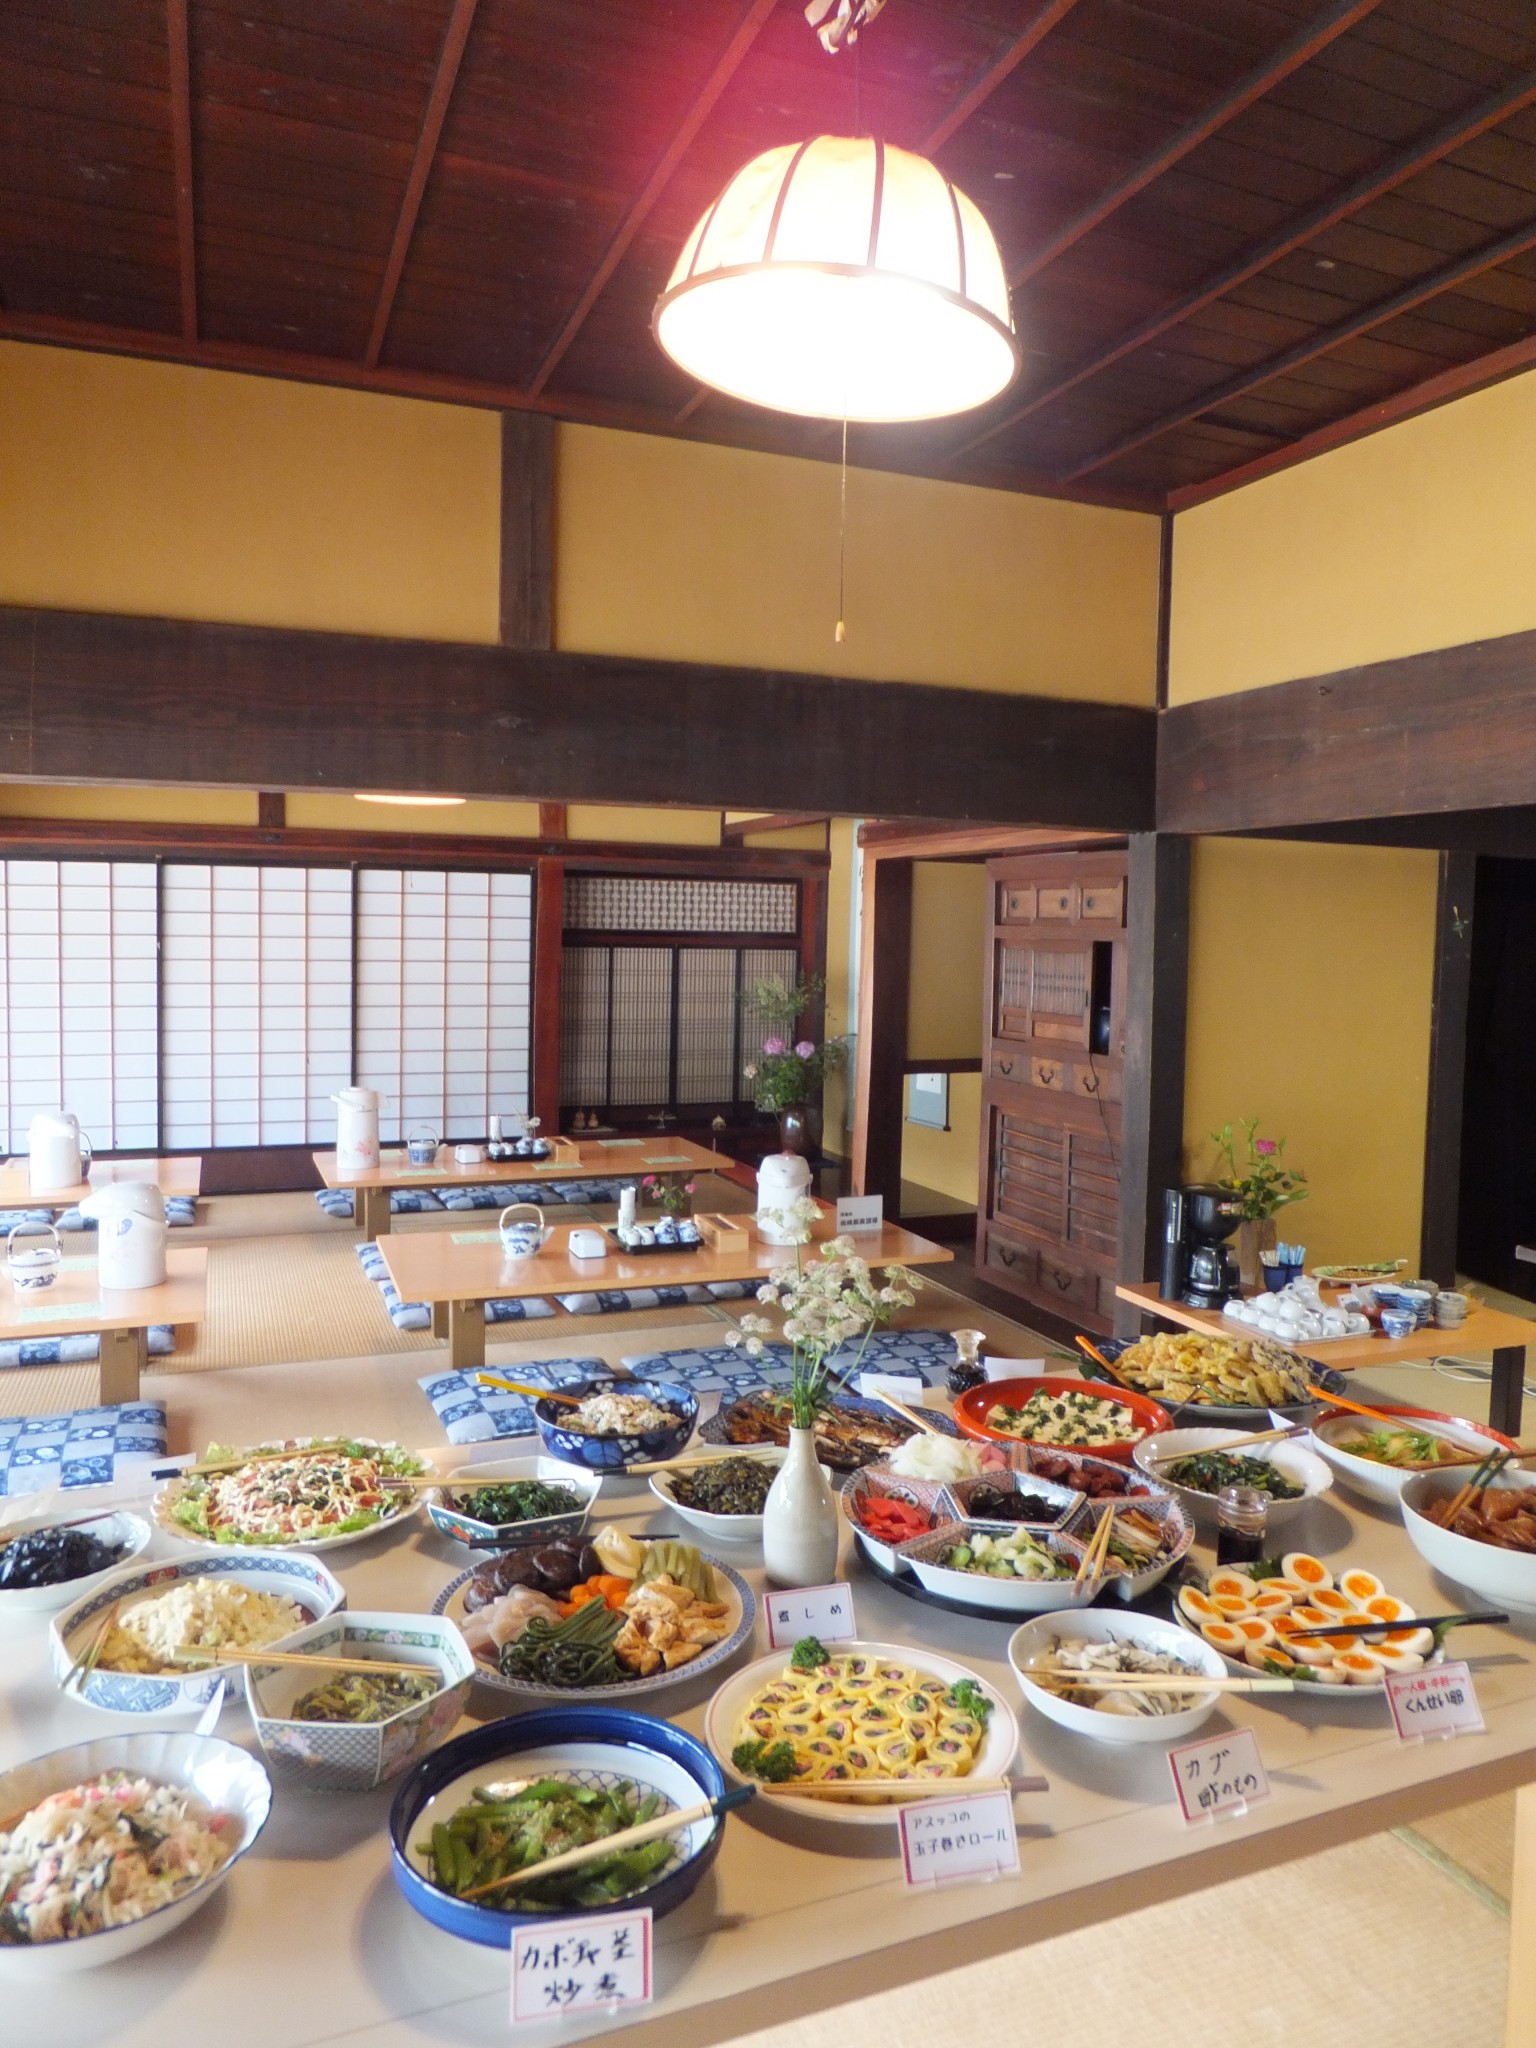 煮しめや焼き鯖などの伝統料理だけでなく、野菜とおからの和え物など創作料理も。1人2,000円で要予約。